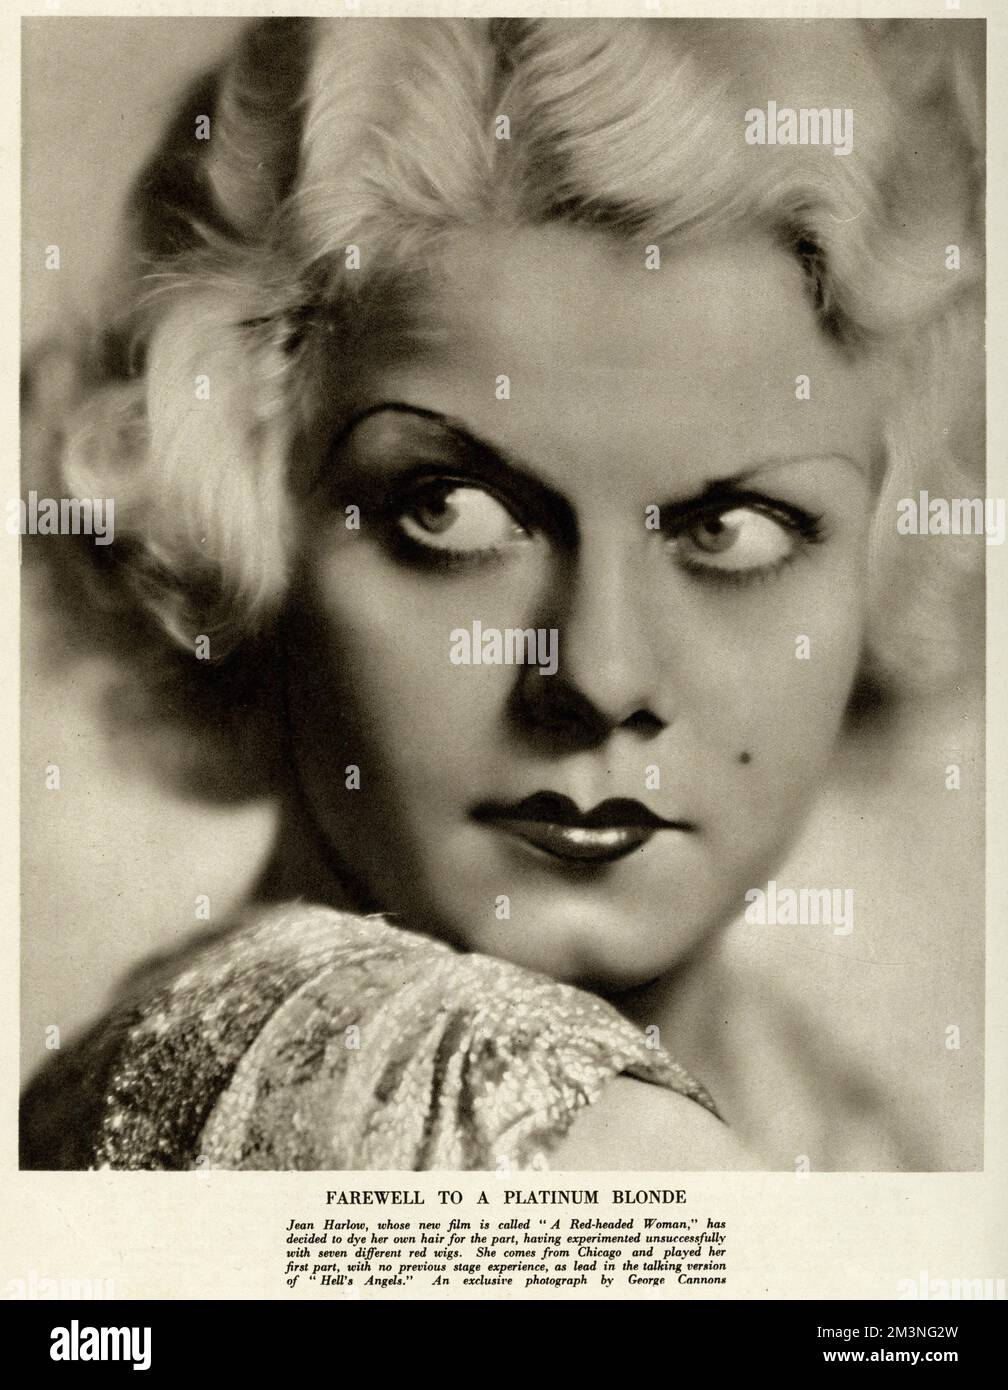 Jean Harlow (1911 1937), attrice cinematografica americana, conosciuta come "Biond Bombshell" e "Platinum Bionda". Qui in un film chiamato "A Red-headed Woman", ha deciso di tingere qui i propri capelli per la parte. Data: 1932 Foto Stock